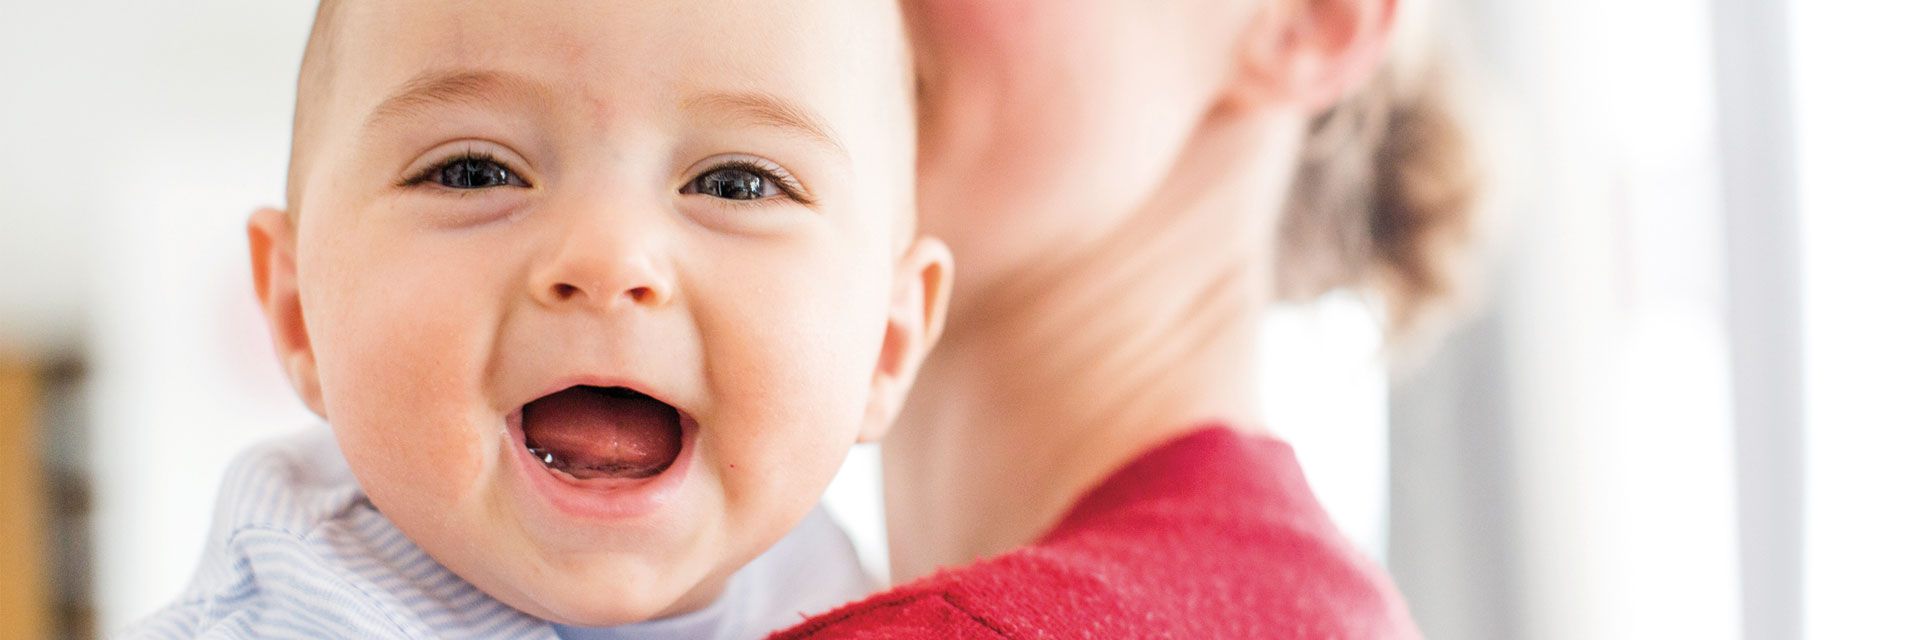 Foto: Ein Kleinstkind blickt mit strahlendem Lachen über die Schulter seiner Mutter.